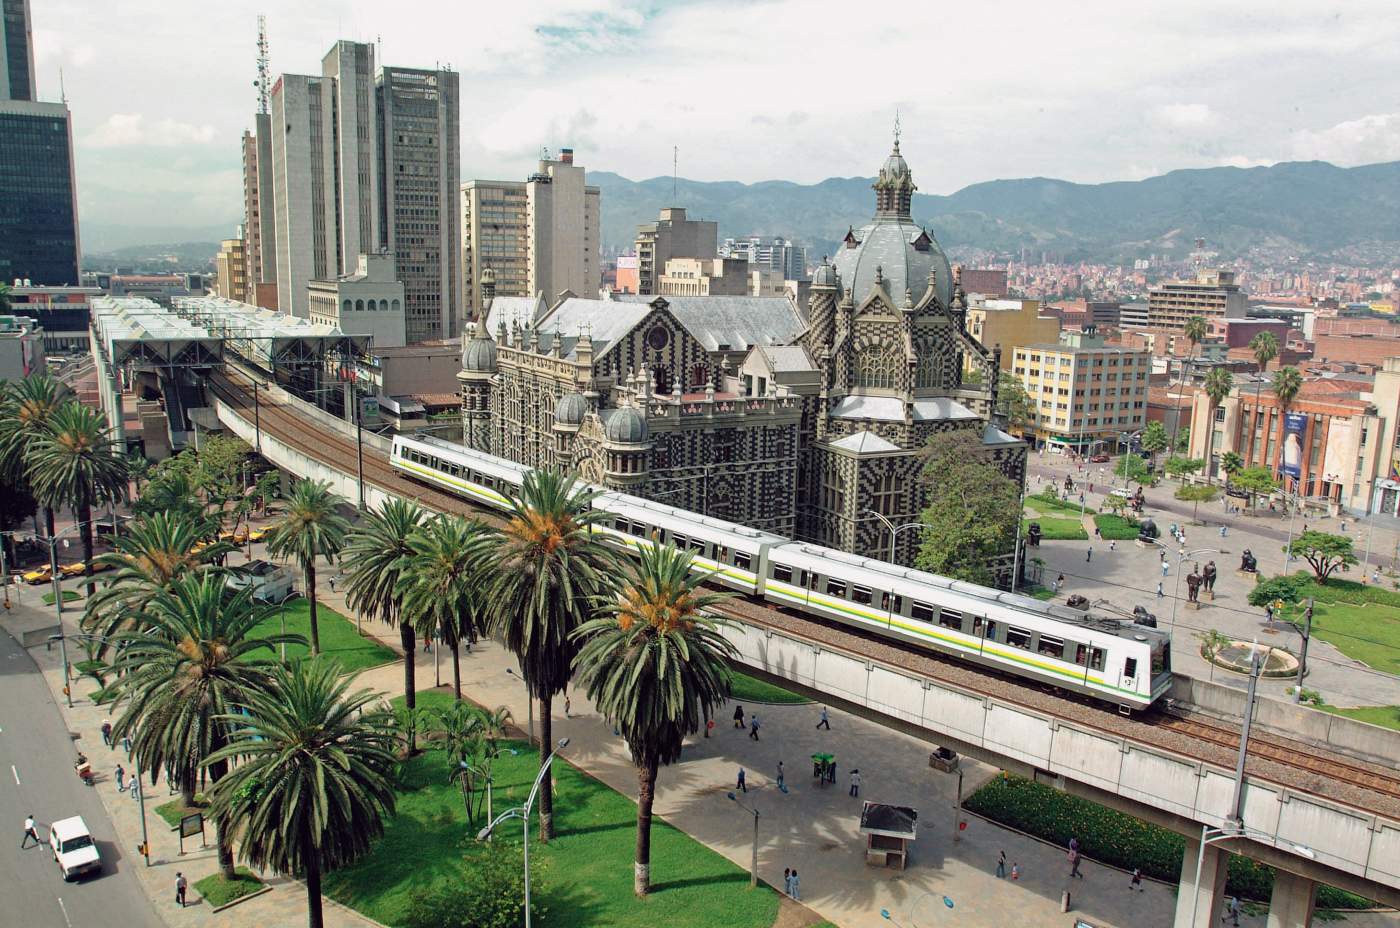 Erlebnisreise: Anden Overland - Panoramablick Medellin - Kolumbien